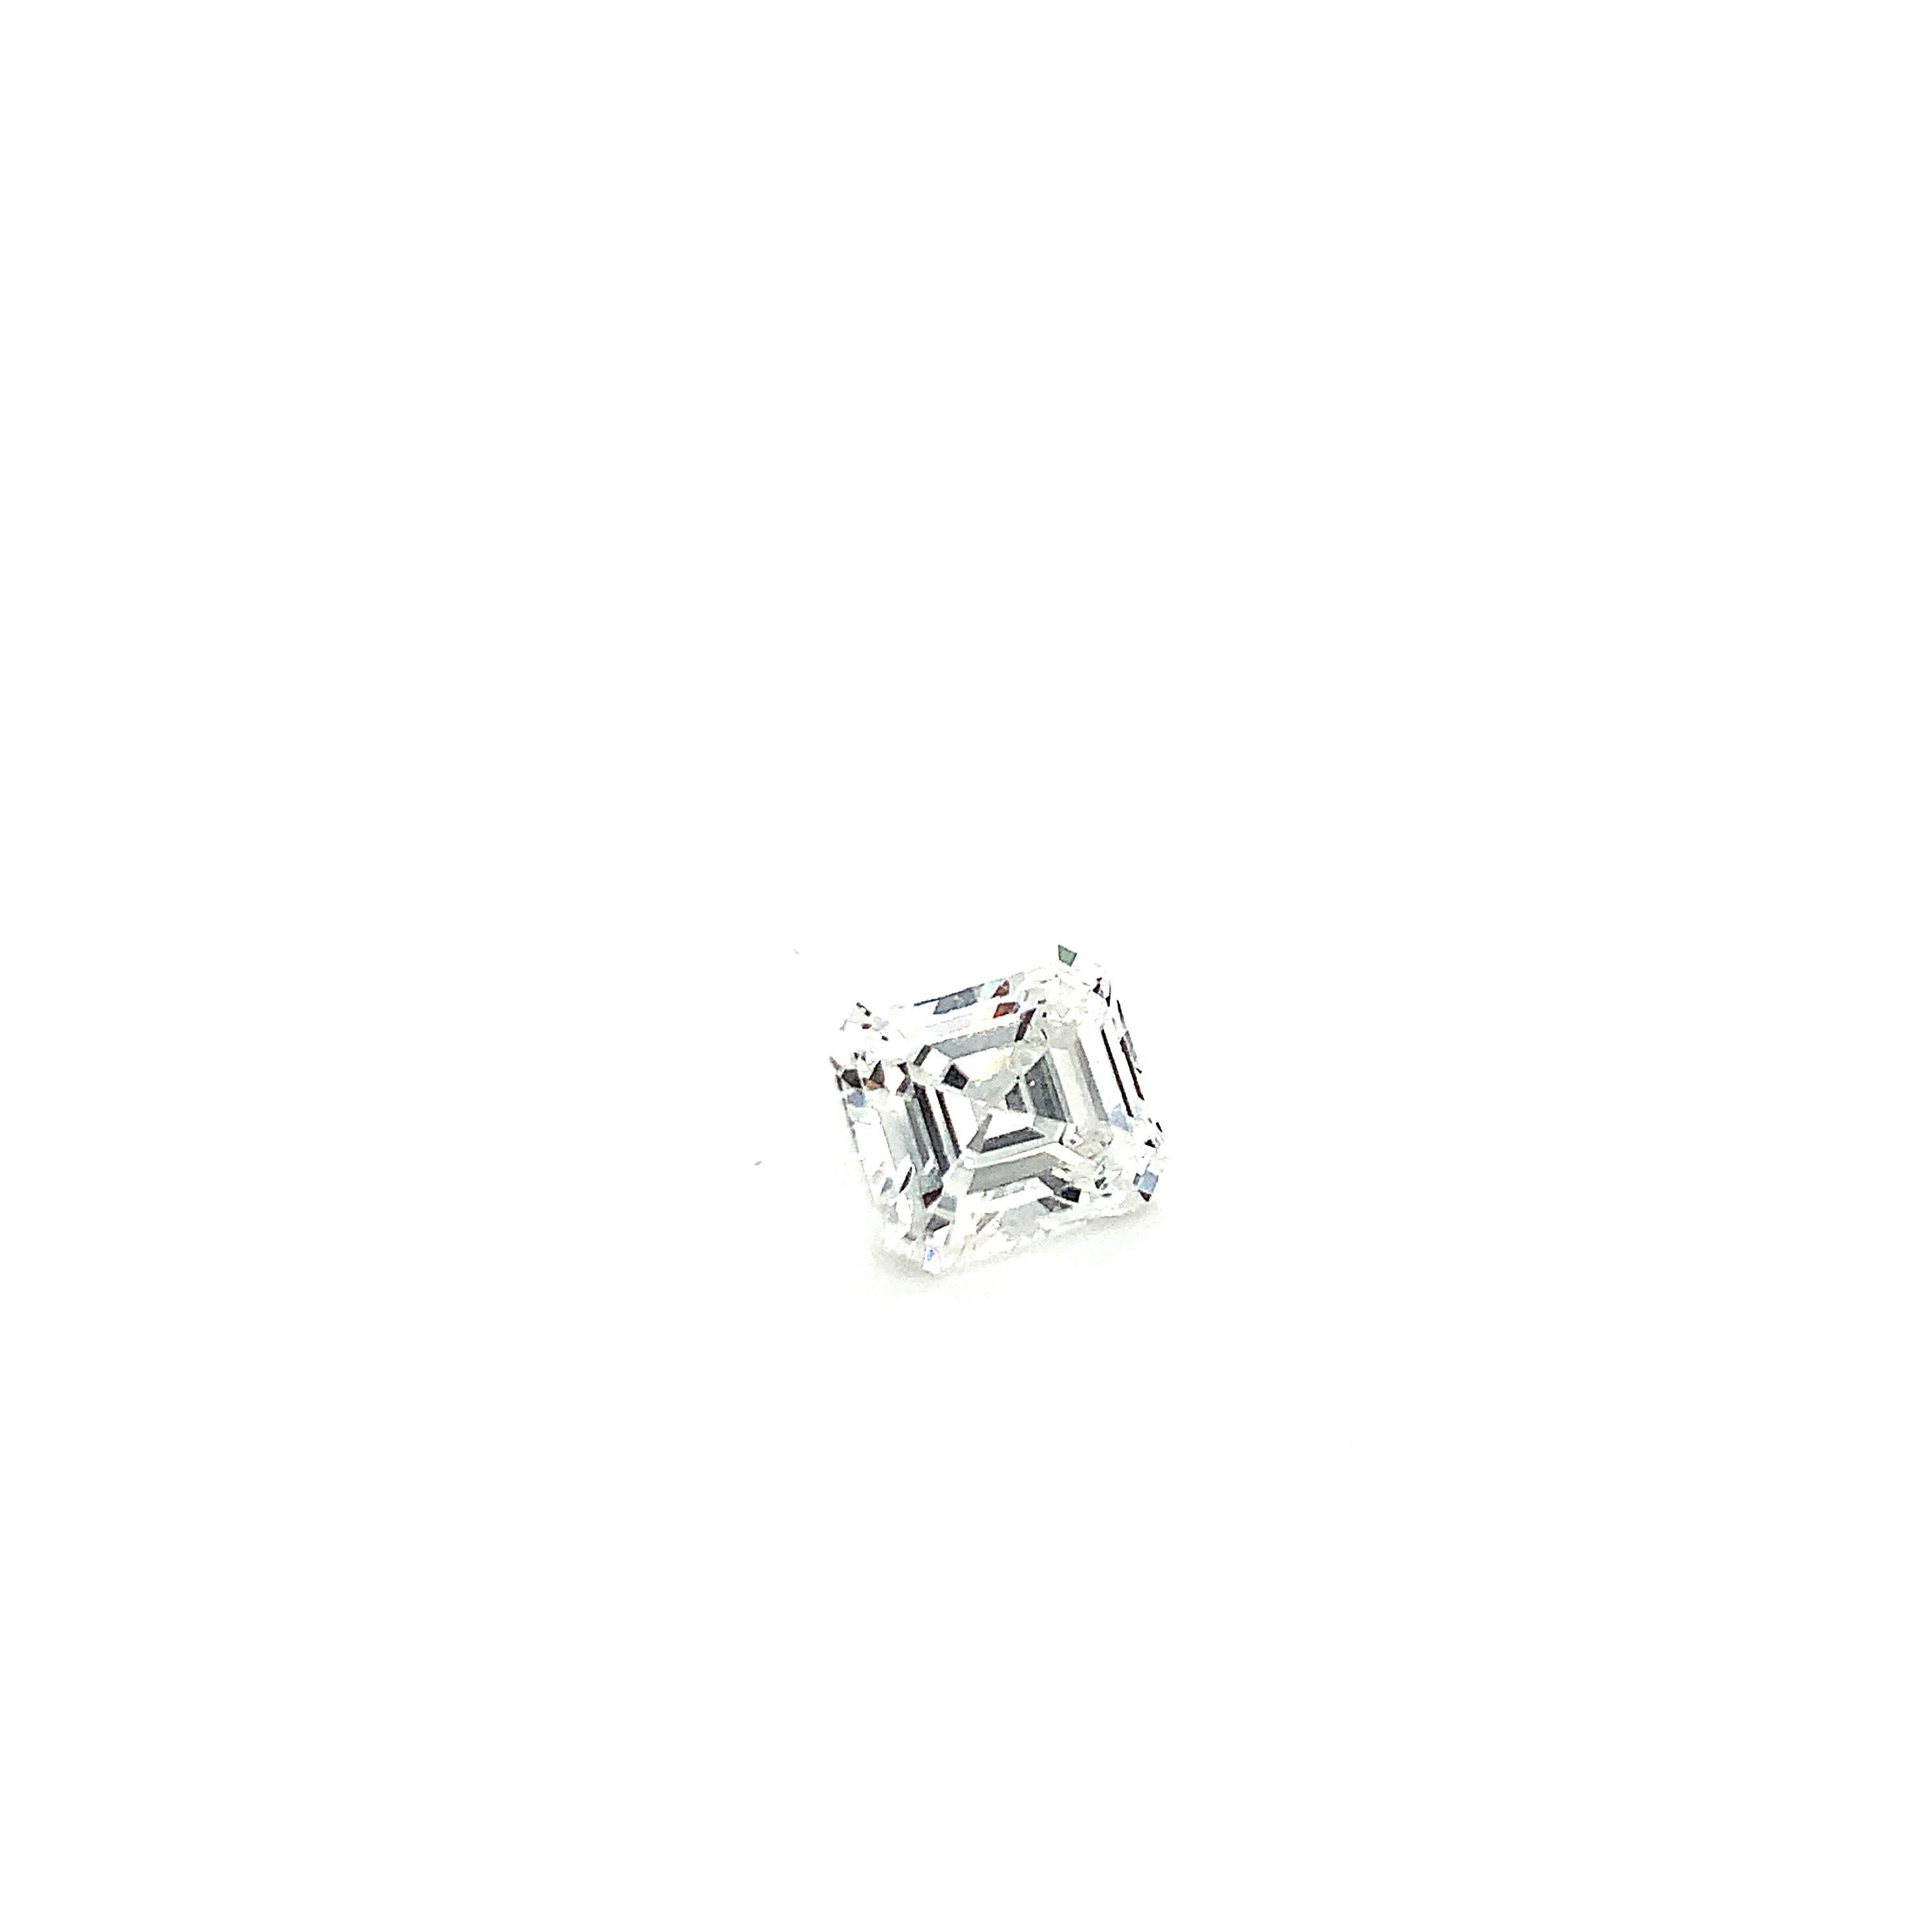 GIA Certified 2.01 Carat Emerald Cut Diamond For Sale 1